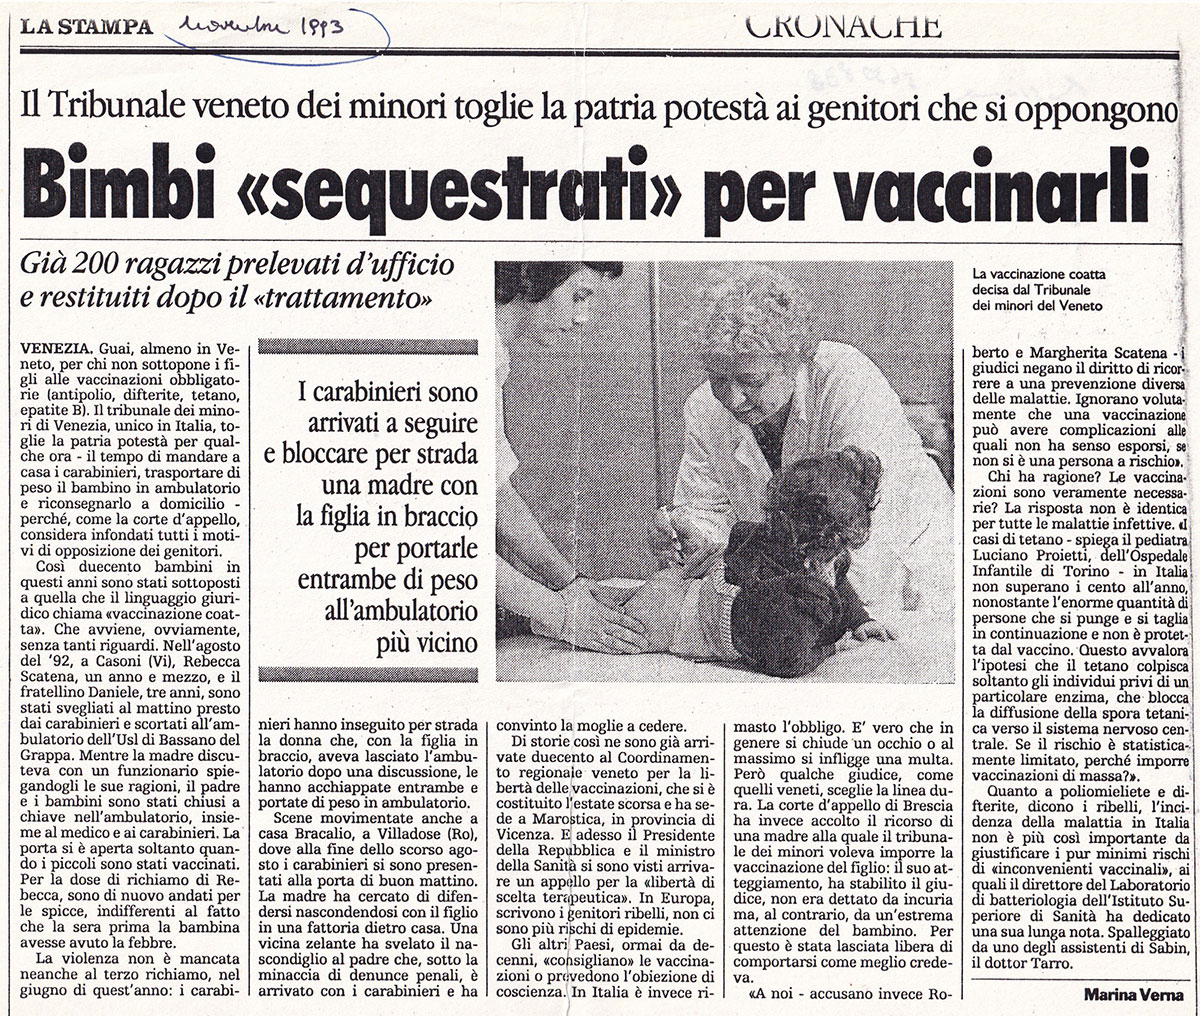 Crianças “apreendidas” para serem vacinadas. La Stampa, novembro de 1993